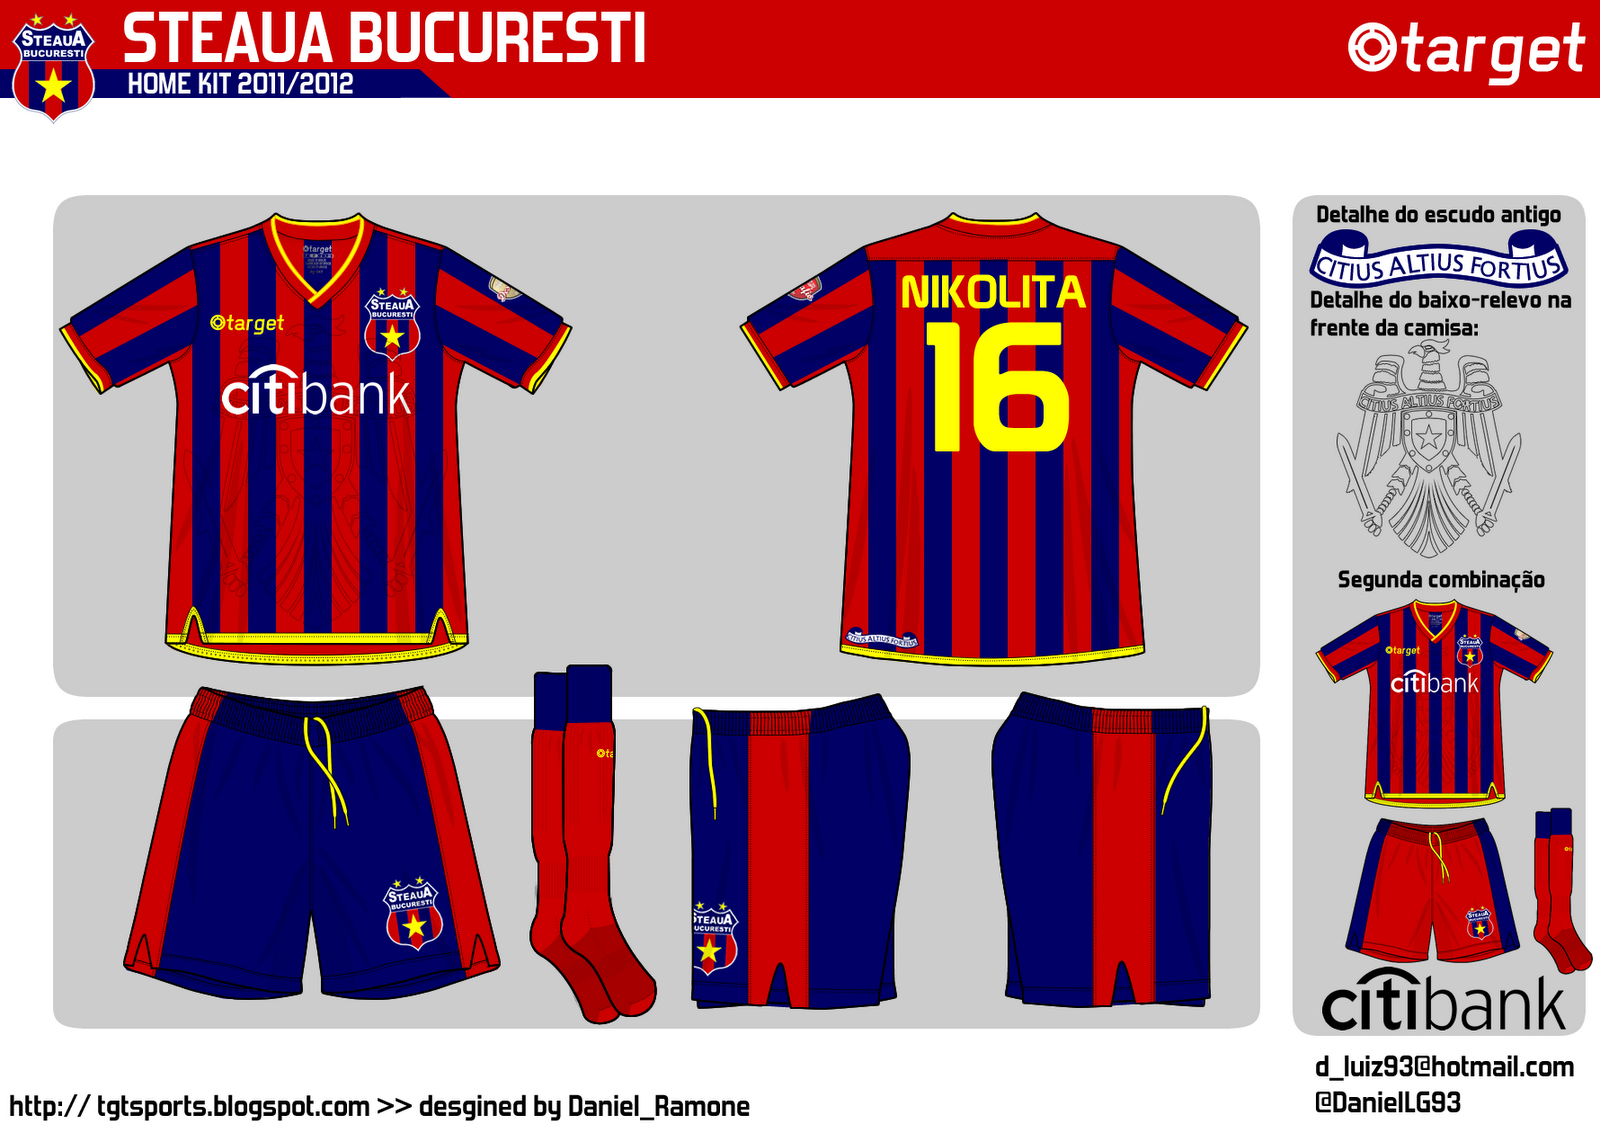 Target Sports: Steaua Bucuresti